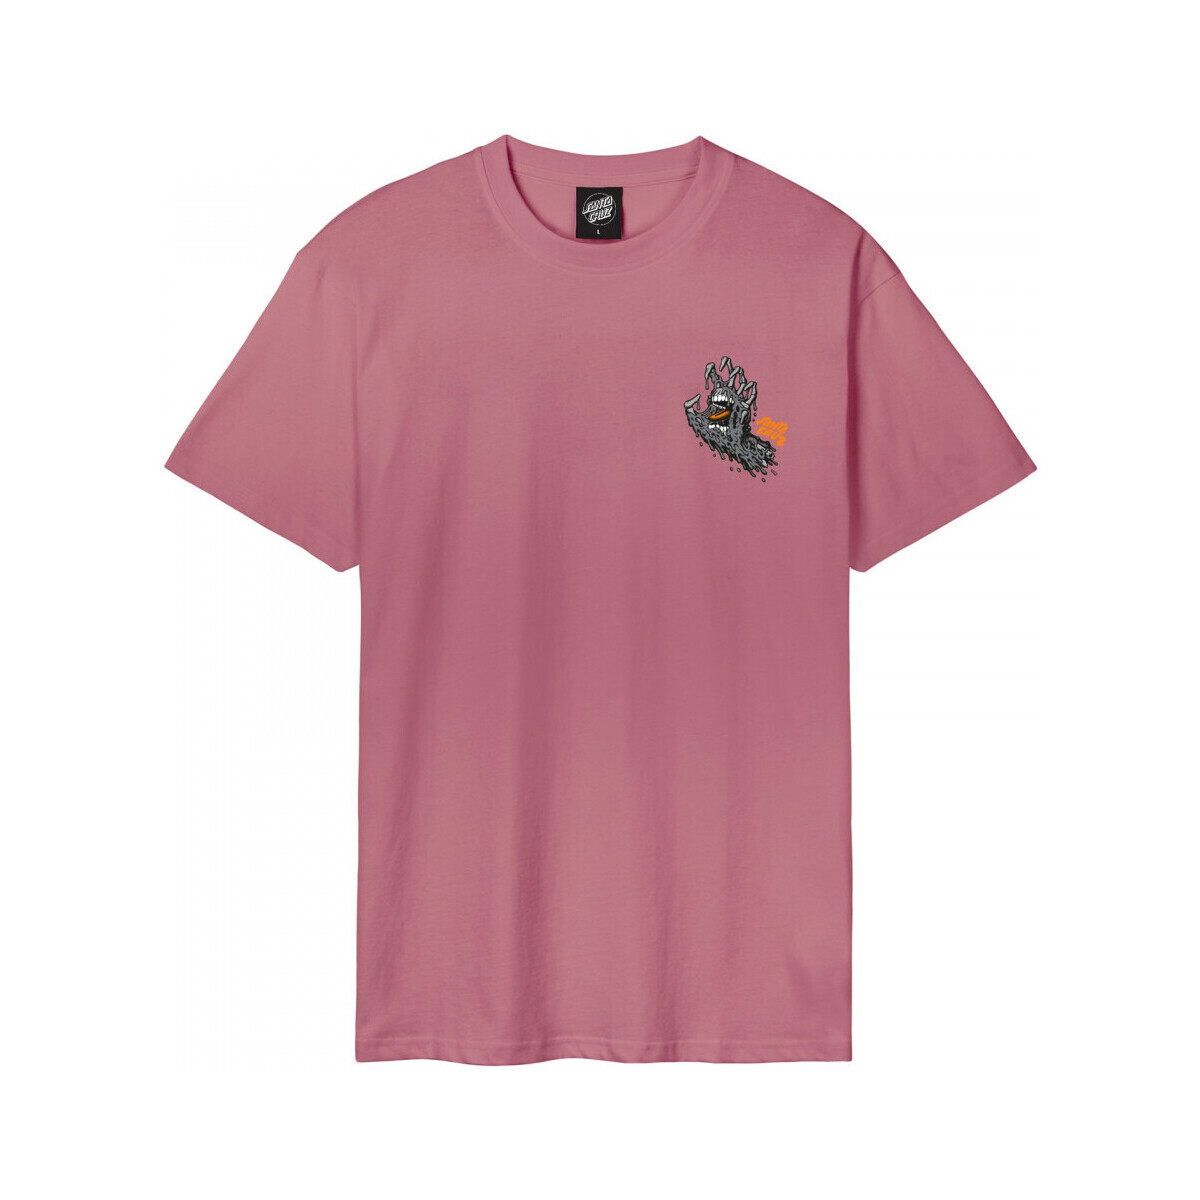 tekstylia Męskie T-shirty i Koszulki polo Santa Cruz Melting hand Różowy